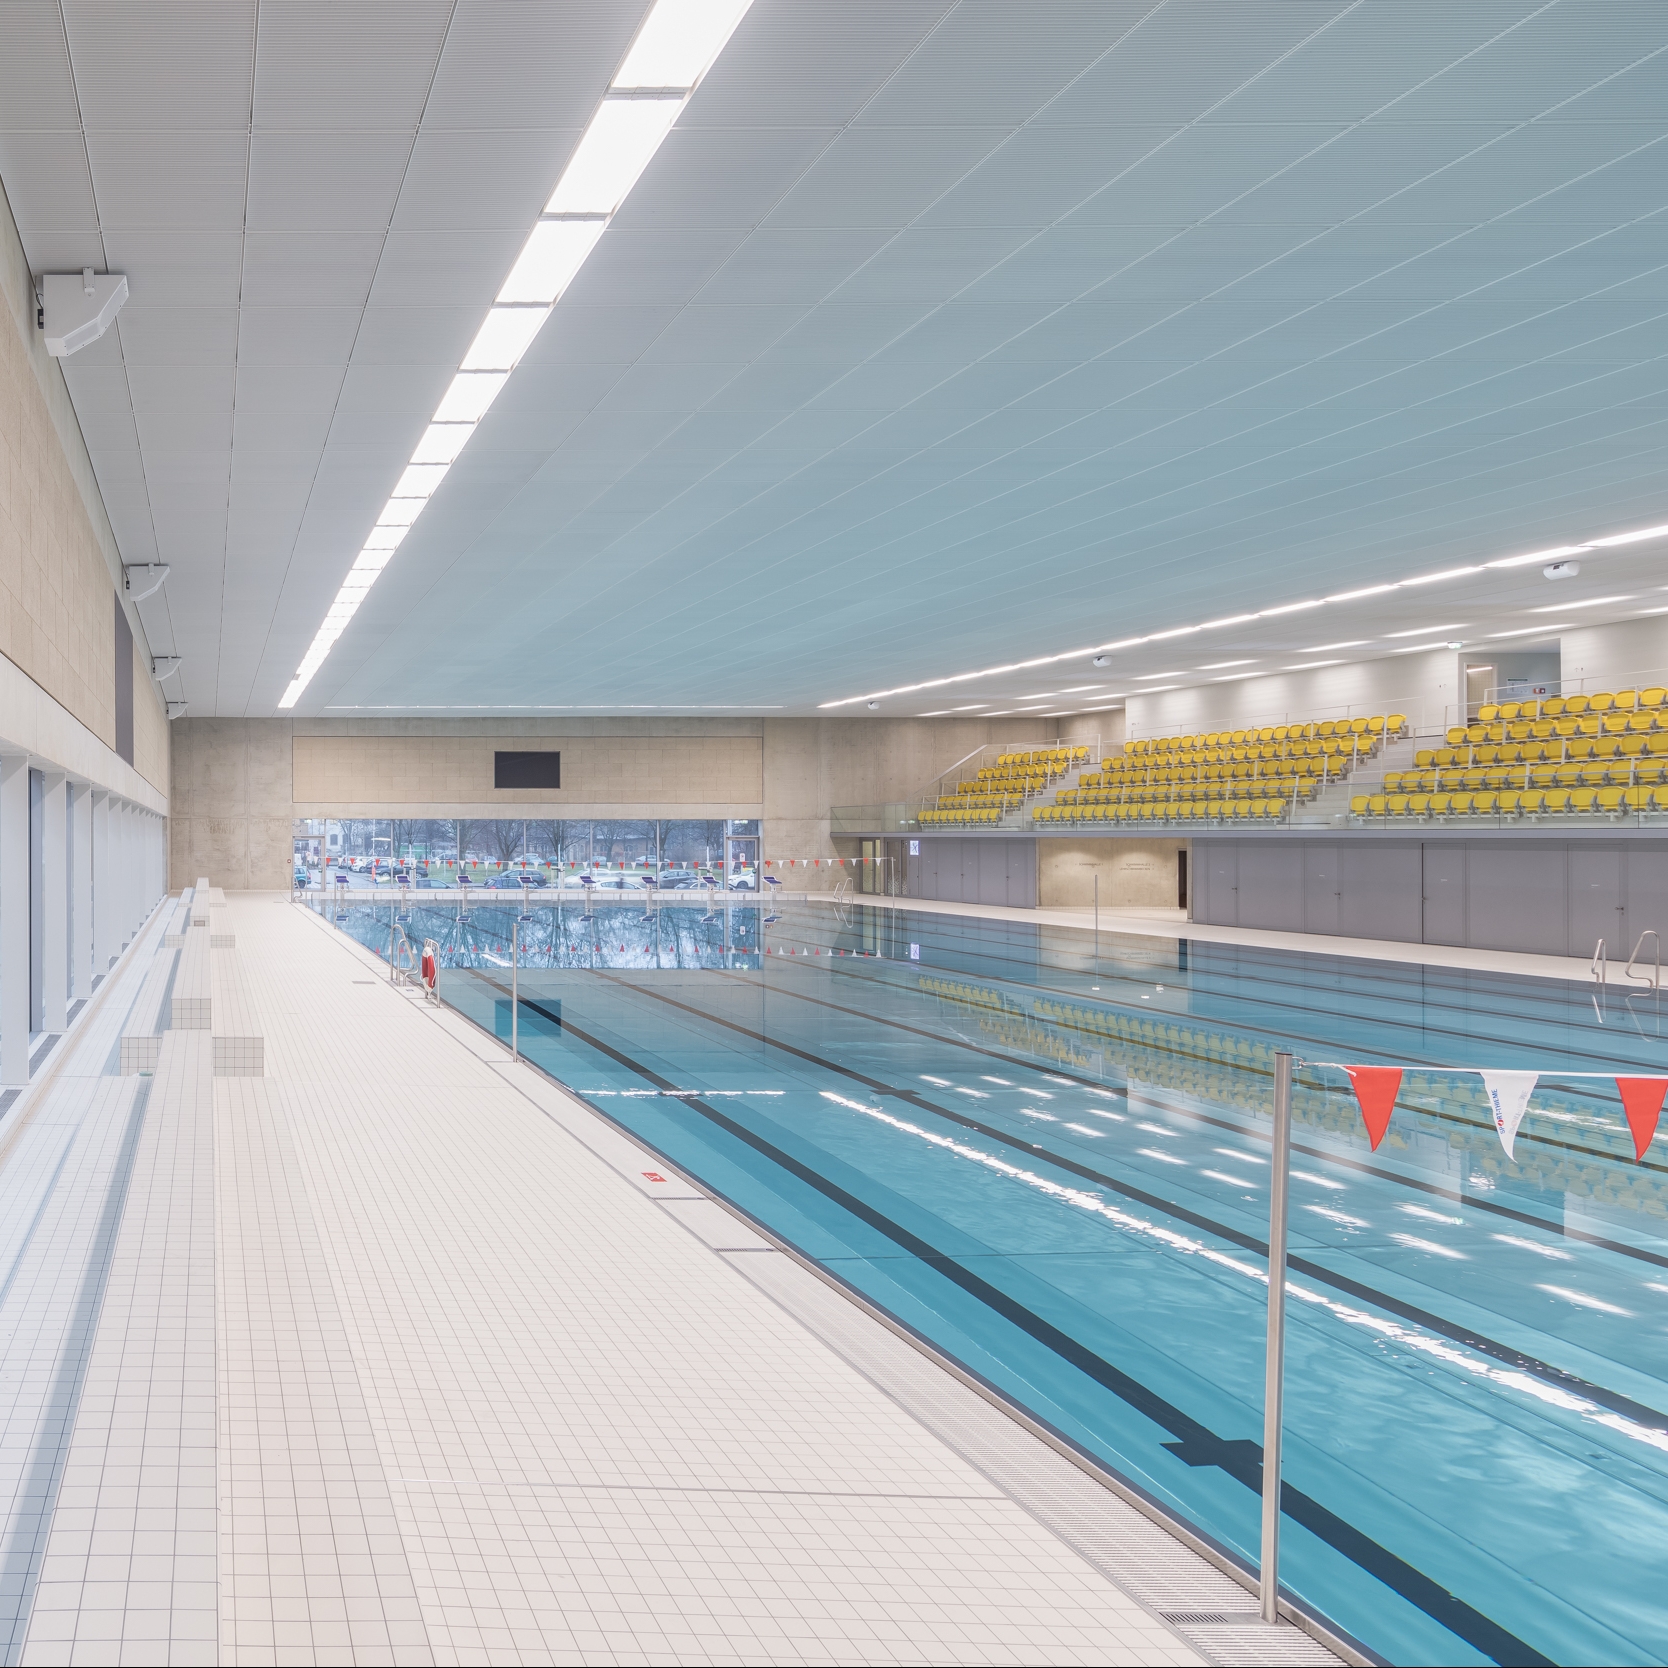 2016_Schwimmsportkomplex Freiberger Platz_Neubau_Dresden_Neubau 50m Becken 1